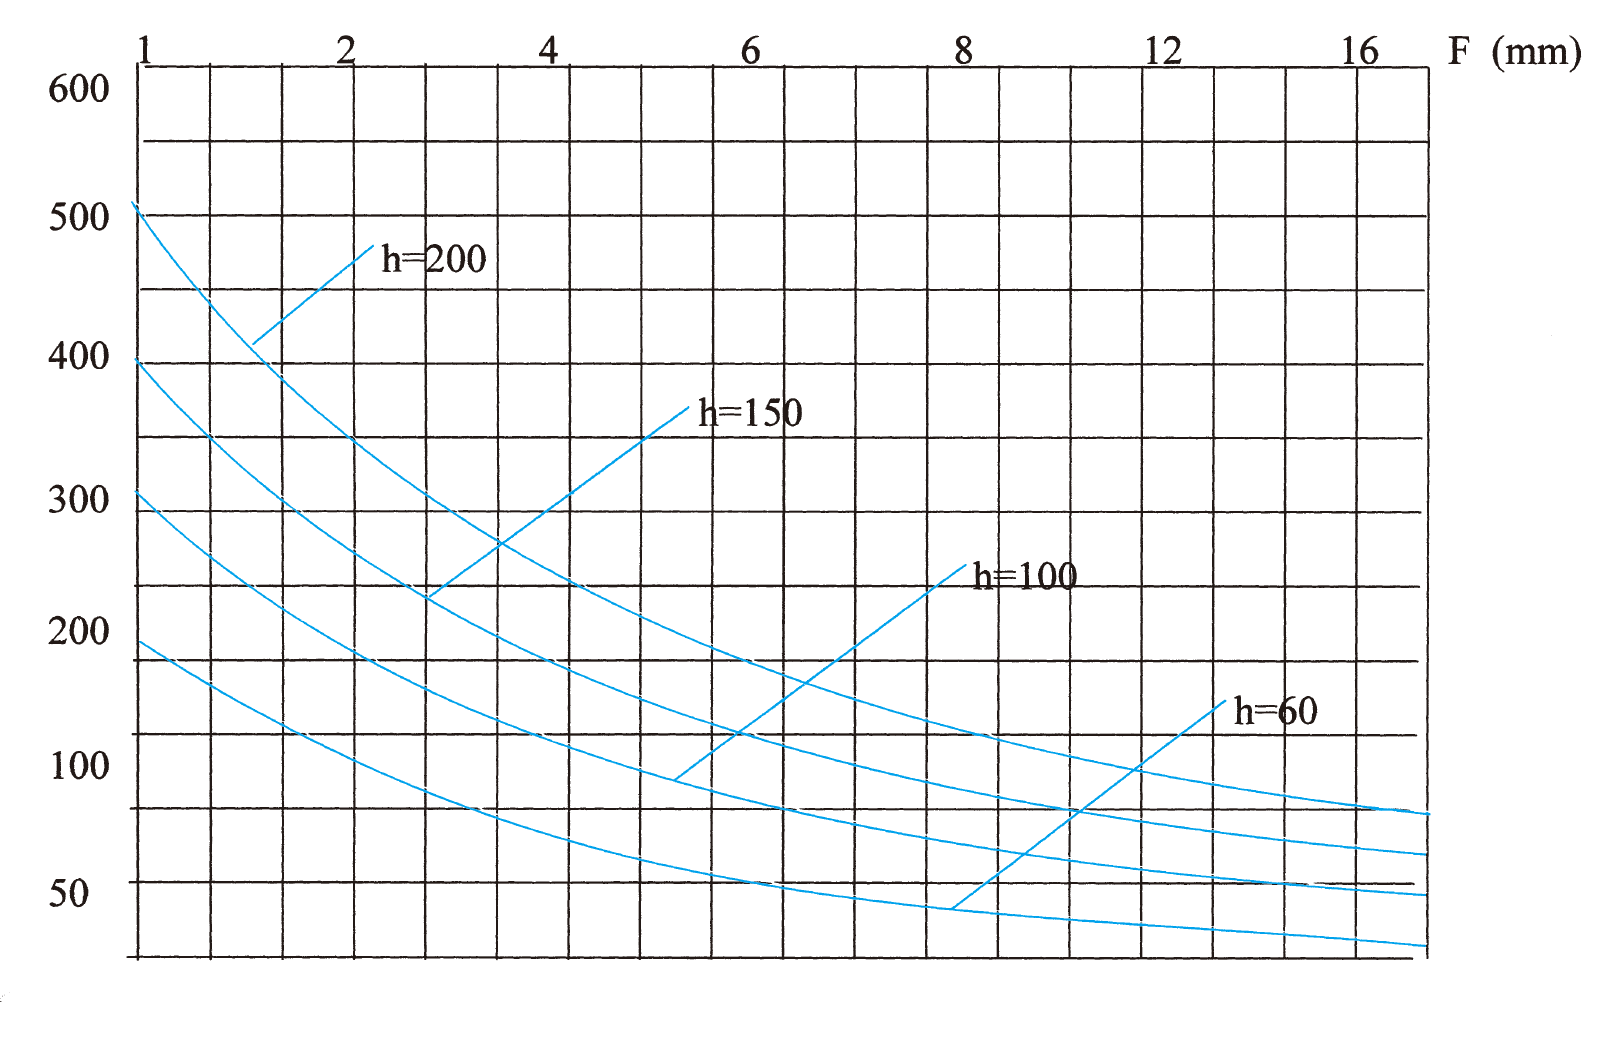 梯级式电缆桥架在不同跨度下最大允许均布载荷变形量图